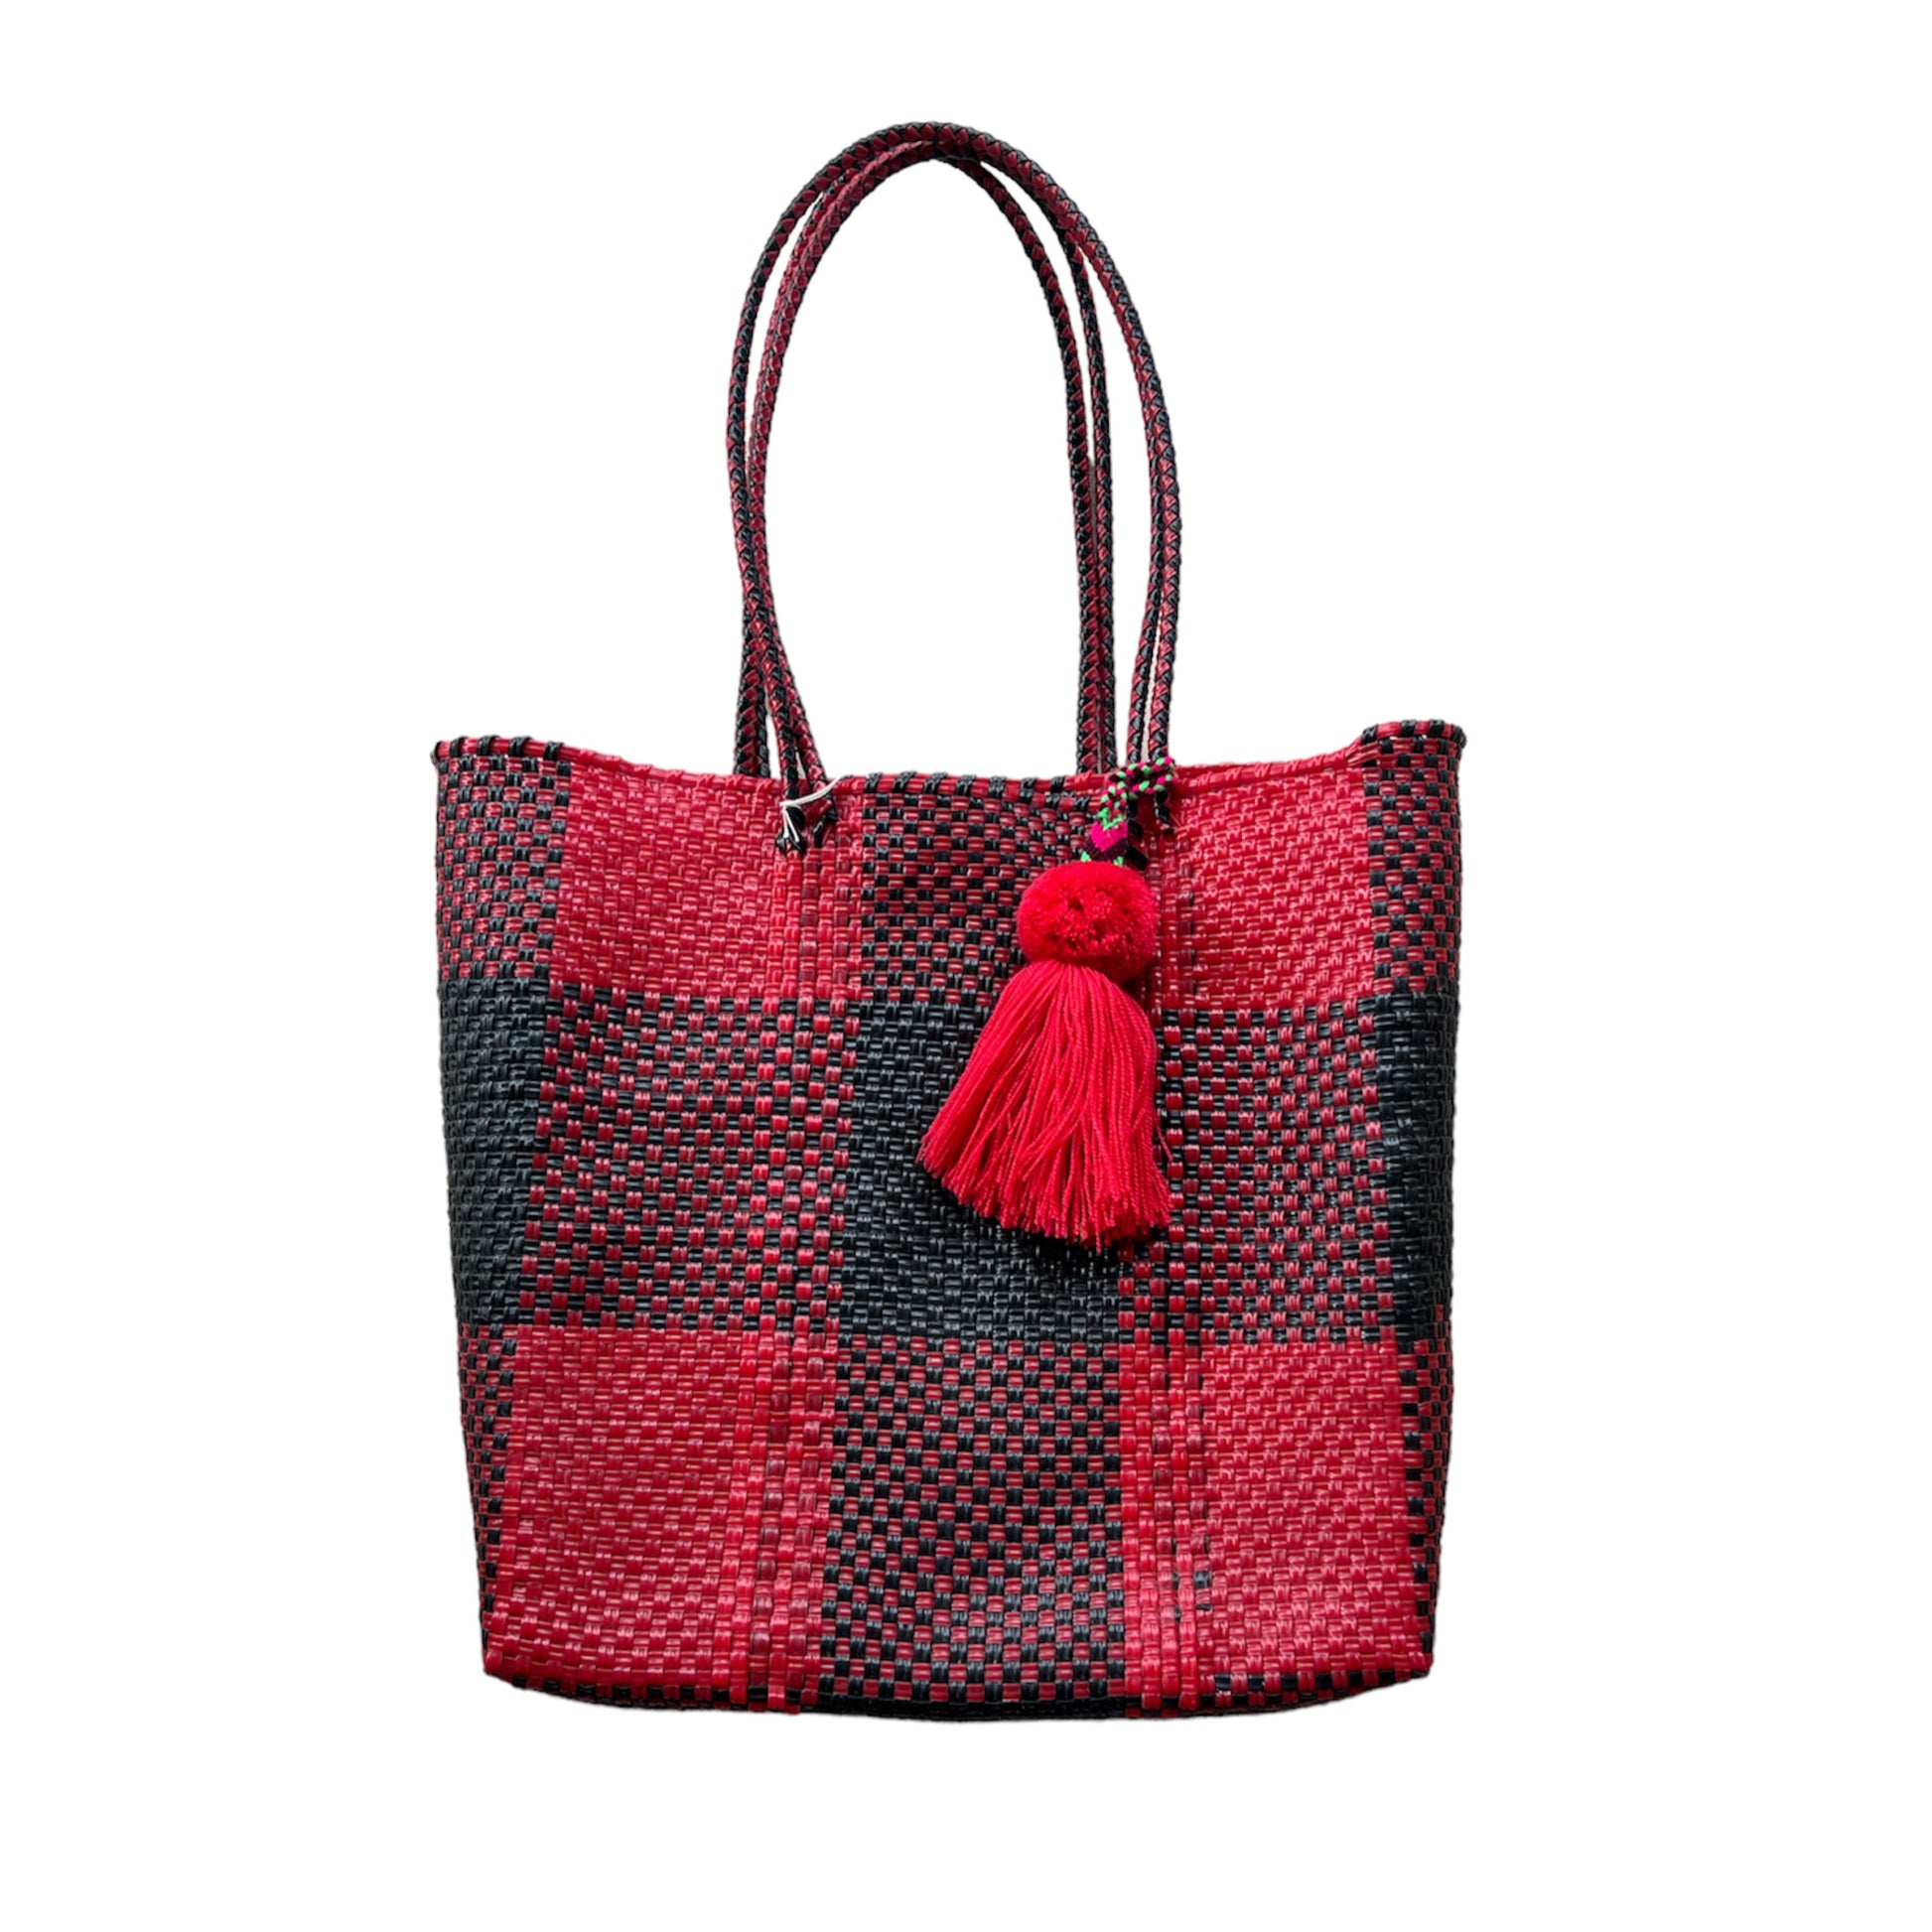 Plaid Red + Black Handwoven Handbag Tote Purse with Pom Pom Charm - Las Ofrendas 